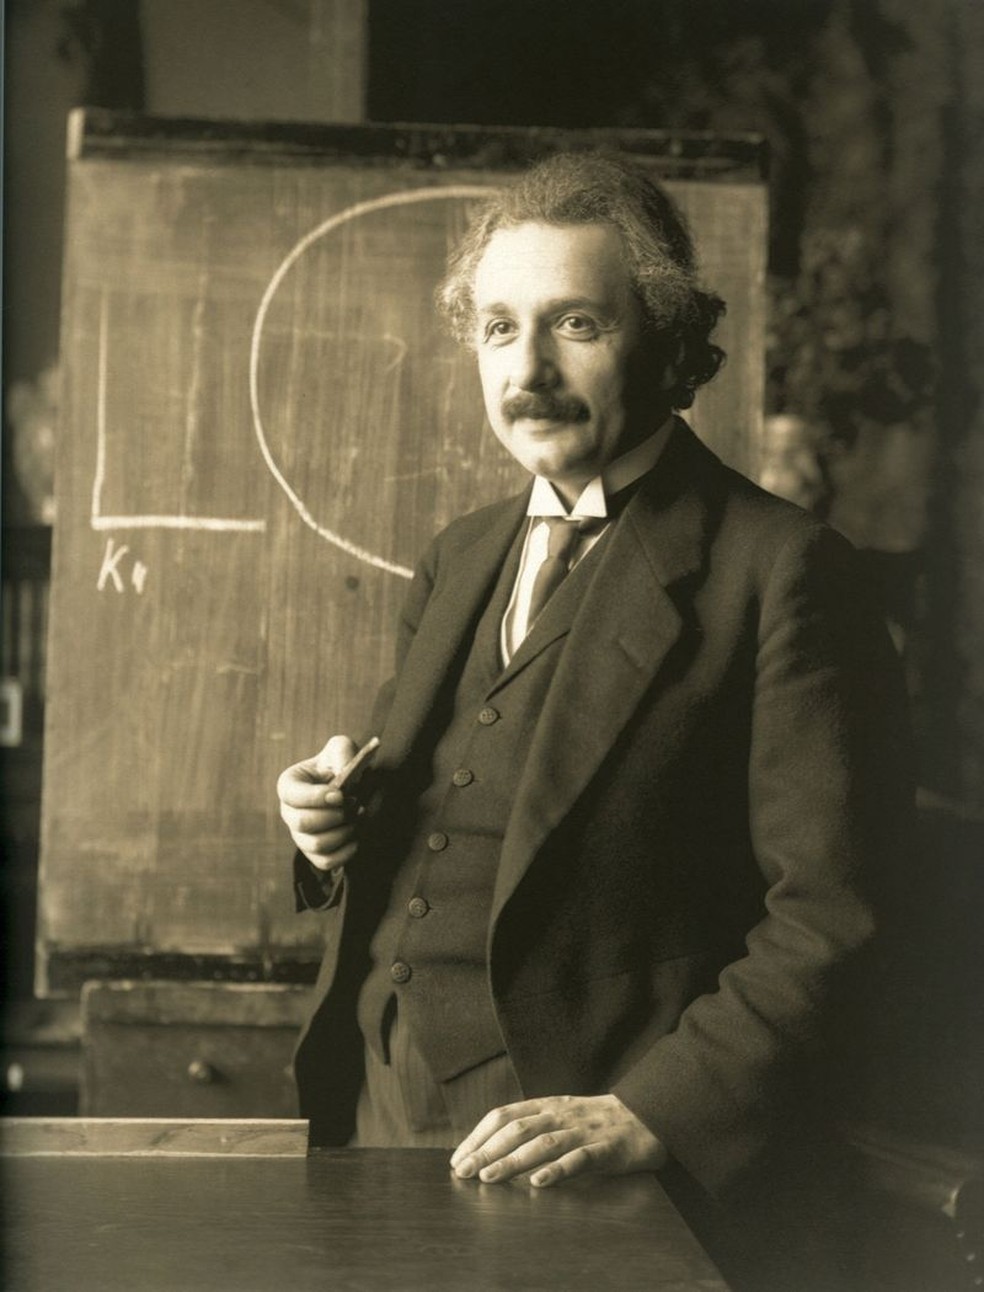 'A gravidade é a primeira coisa em que não pensamos', segundo Einstein — Foto: FERDINAND SCHMUTZER/BIBLIOTECA NACIONAL DA ÁUSTRIA/VIA BBC